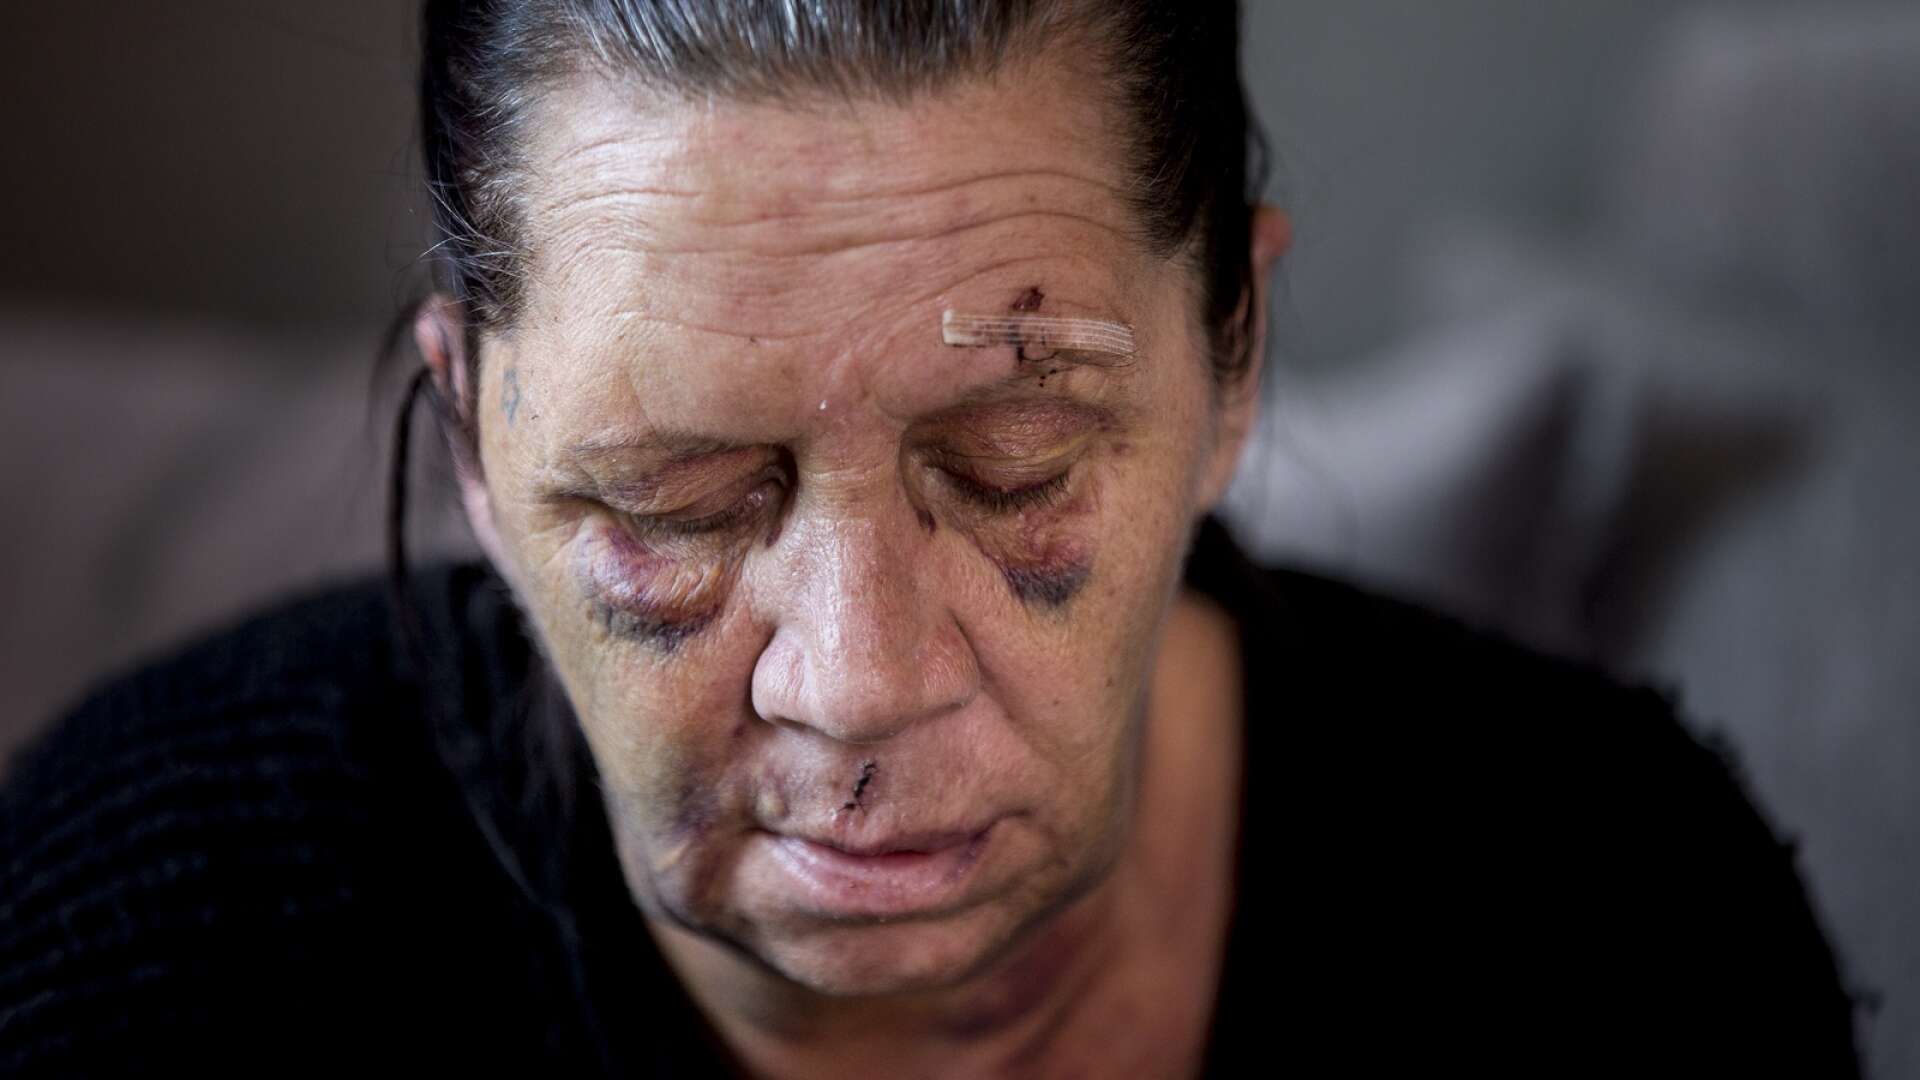 Den 18 april misshandlades Pernilla så grovt att hon fick frakturer på både näsbenet och ena käken. Nu döms hennes förövare.